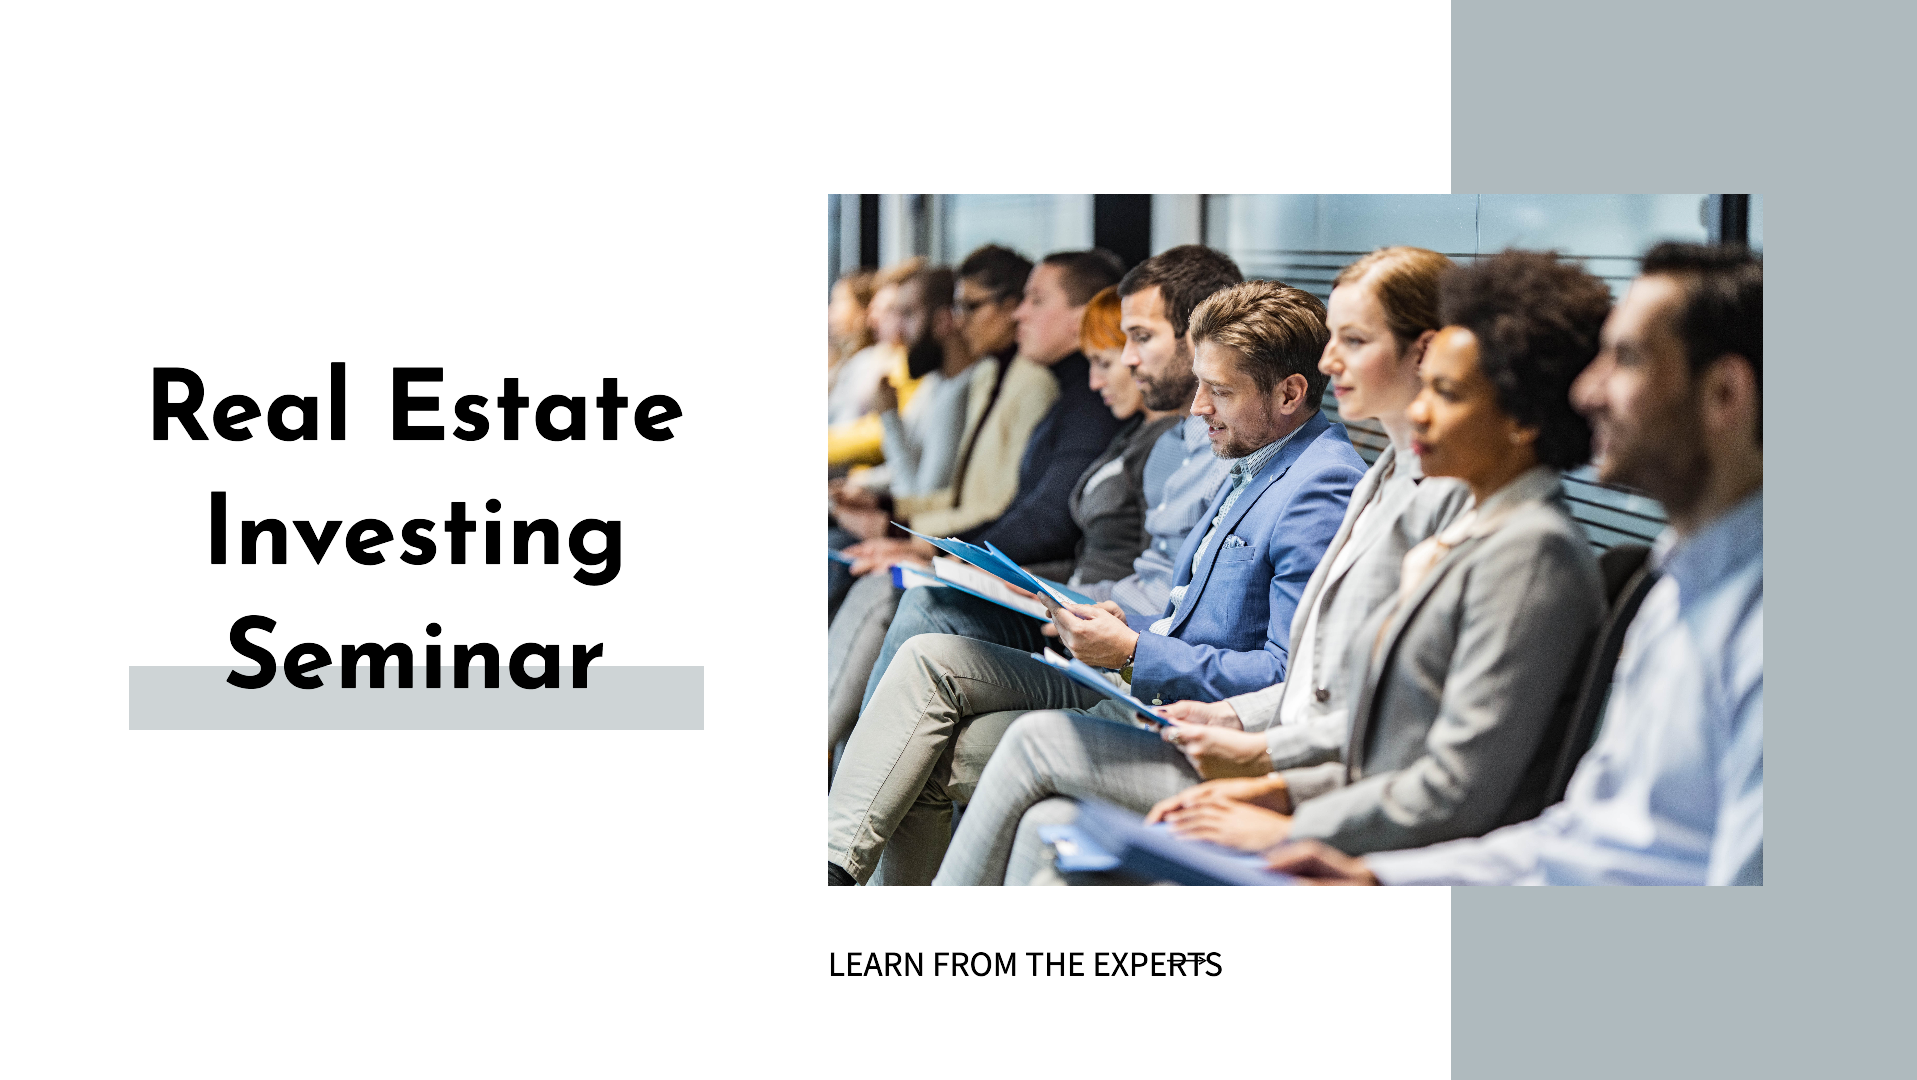 Real Estate Investing Seminar